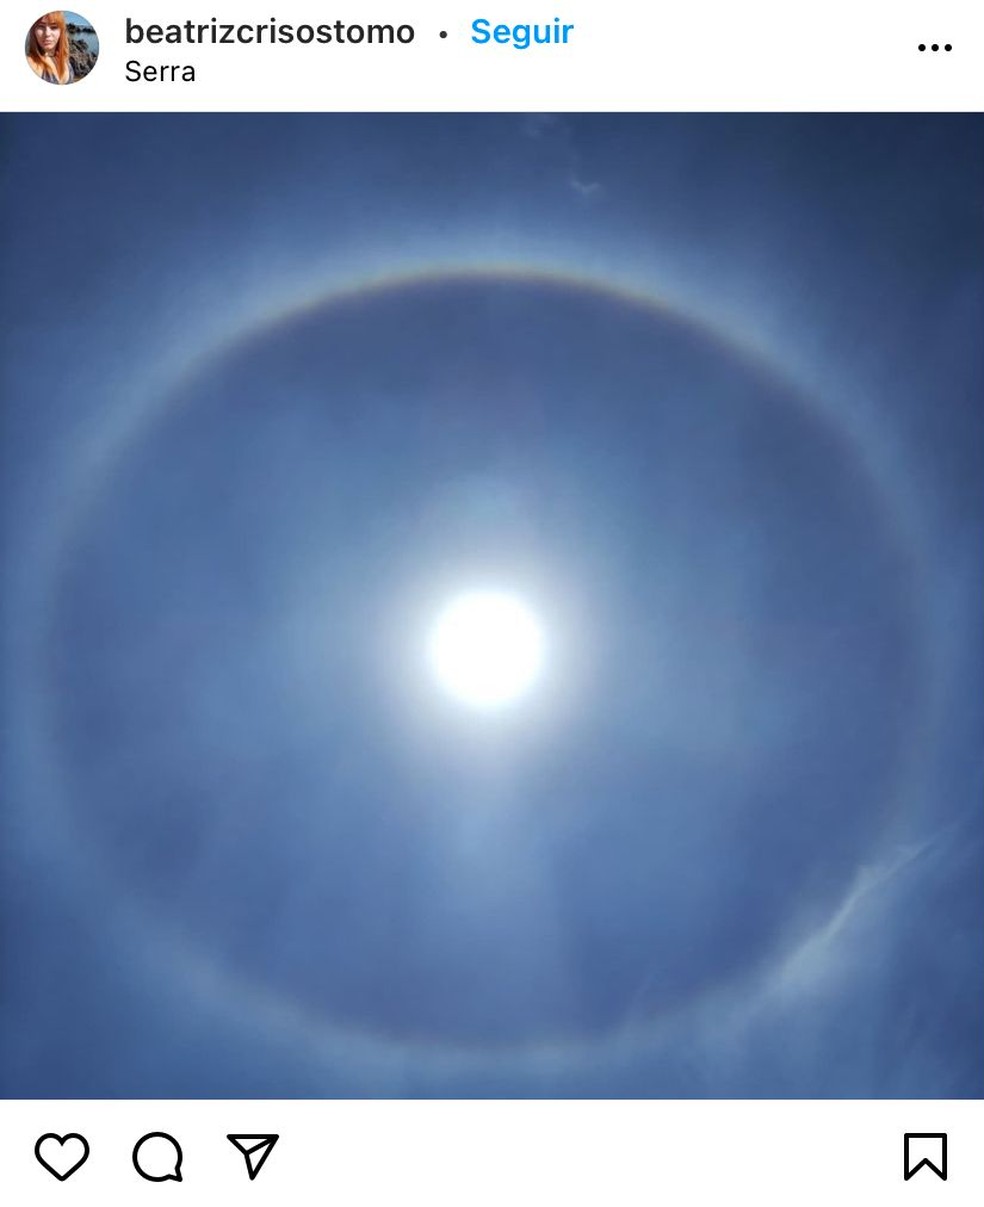 Fenômeno do halo solar foi visto por moradores de Cabrobó